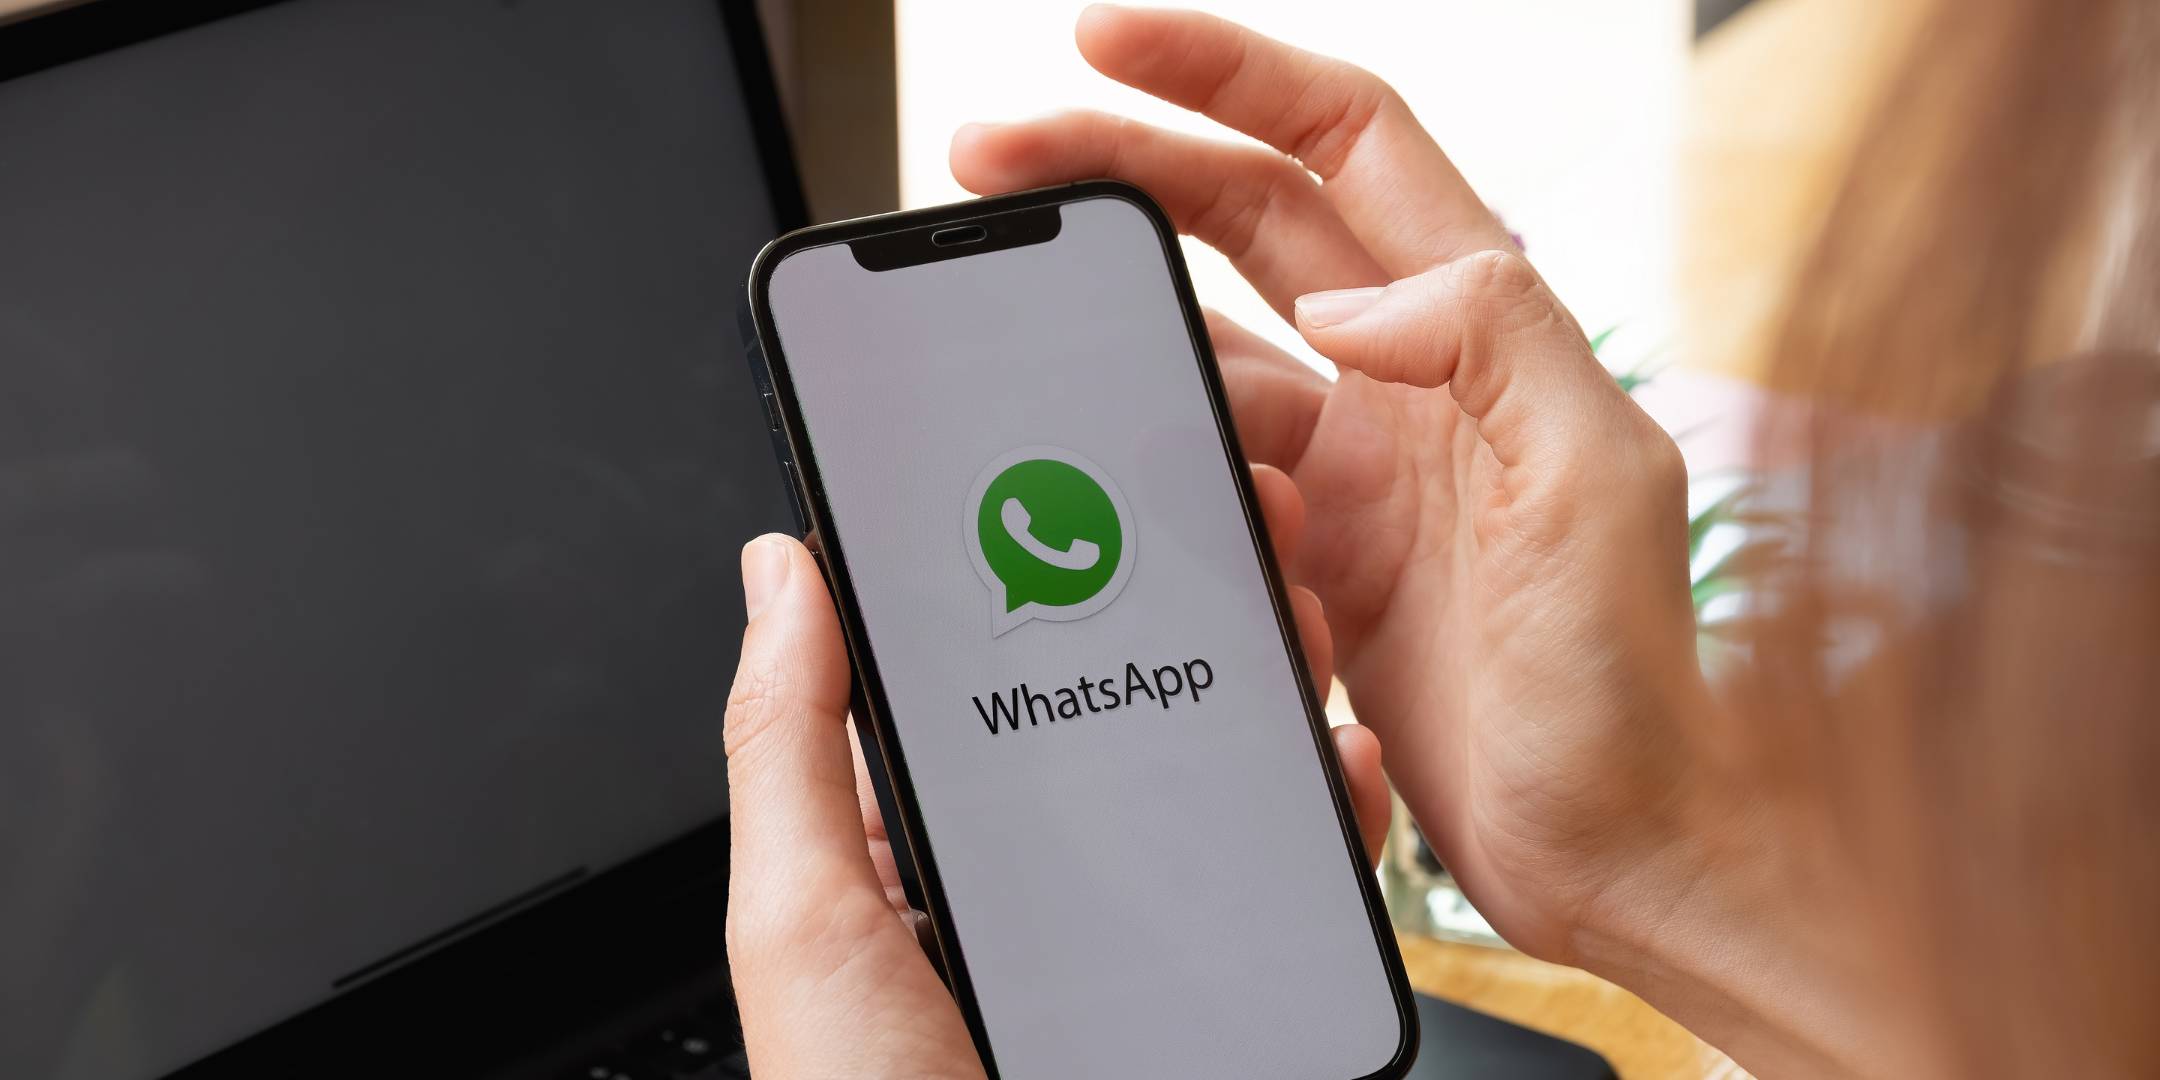 WhatsApp hat für jede Unternehmensgröße die richtige Lösung.